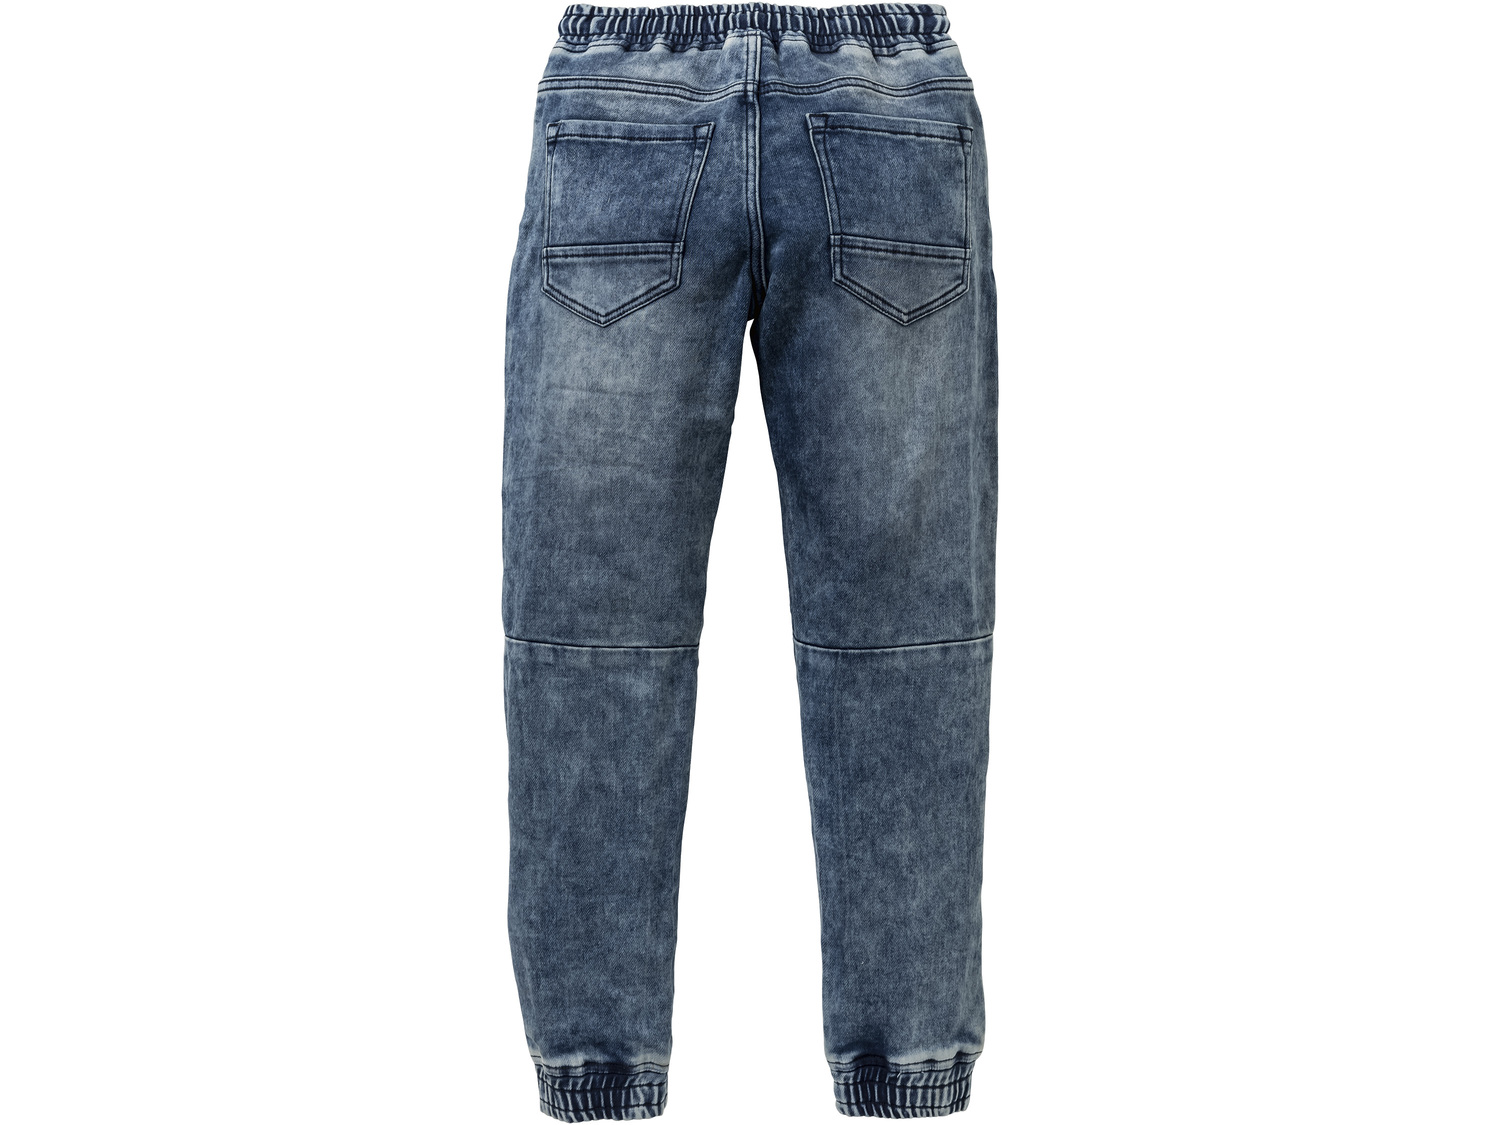 Joggery chłopięce Pepperts, cena 33,00 PLN 
- rozmiary: 146-176
- wygląd jeansu, ...